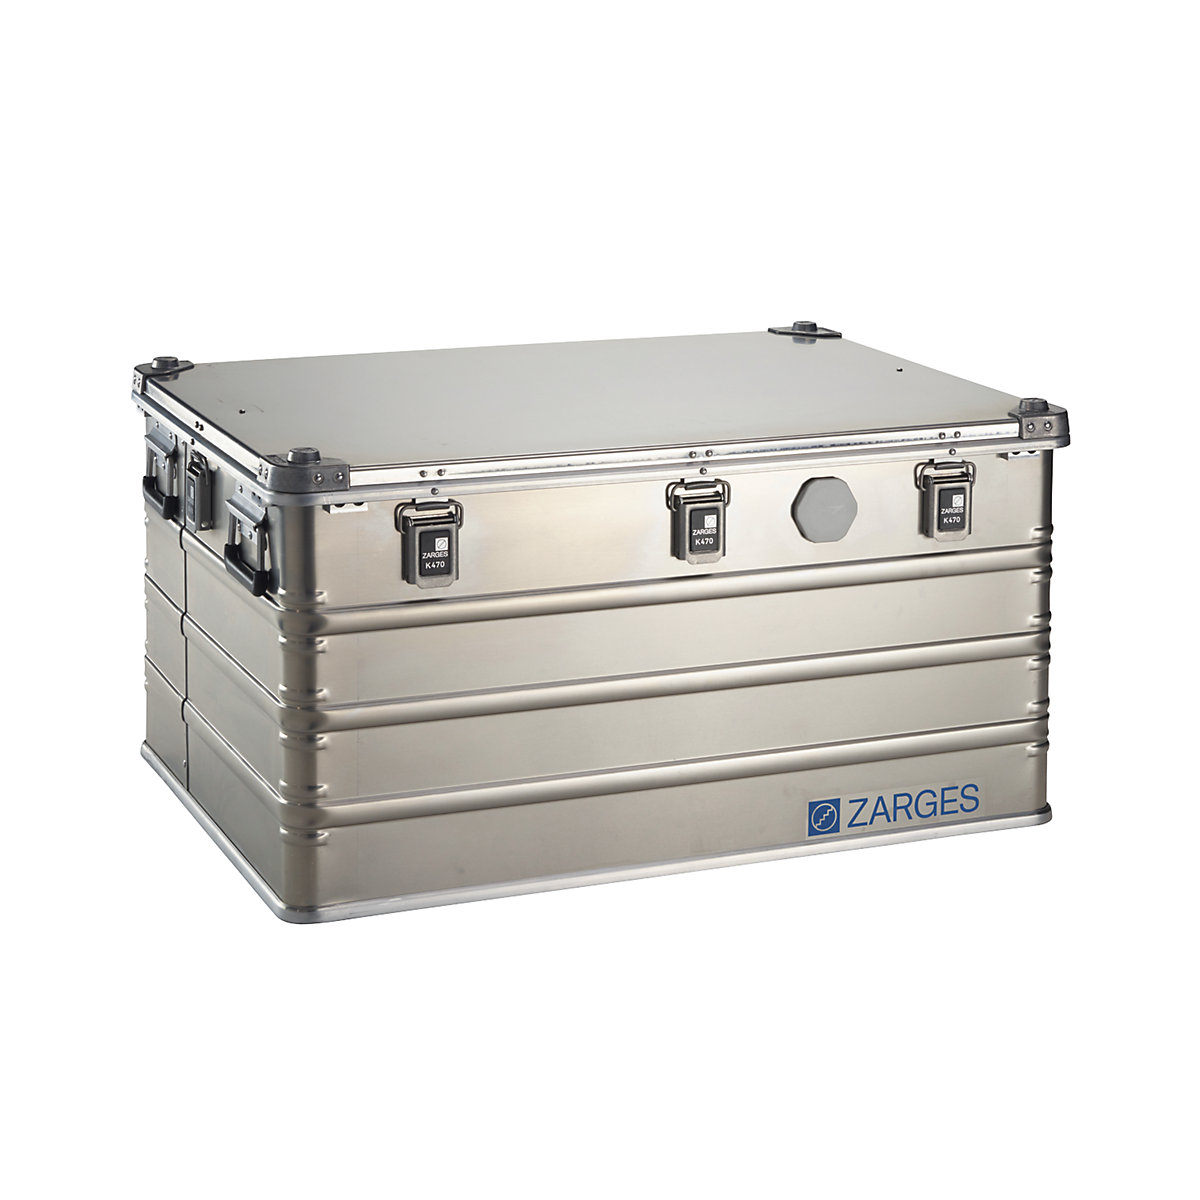 IP67 aluminium universal container - ZARGES